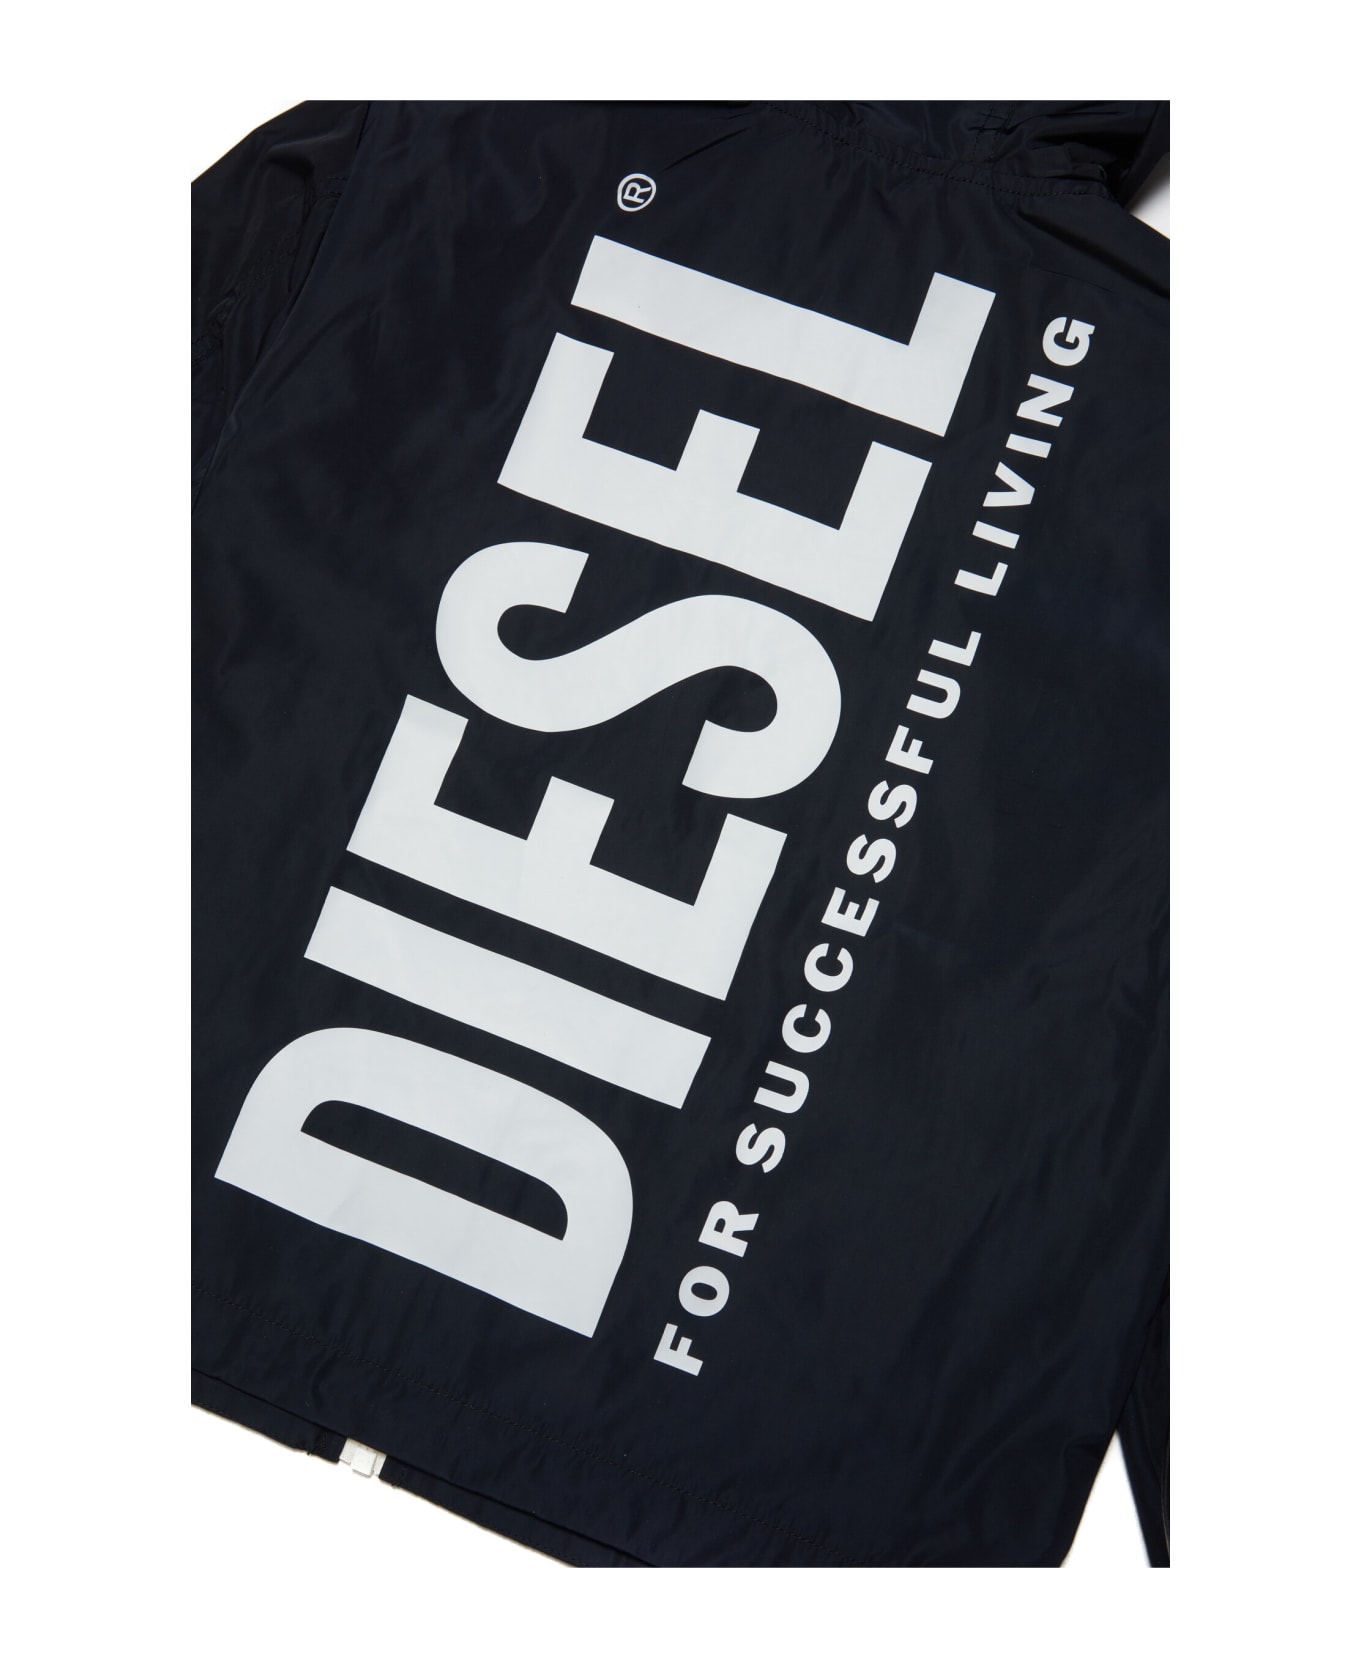 Diesel Jwally Jacket Diesel Black Windbreaker Jacket With Hood And Extra-large Logo - Black